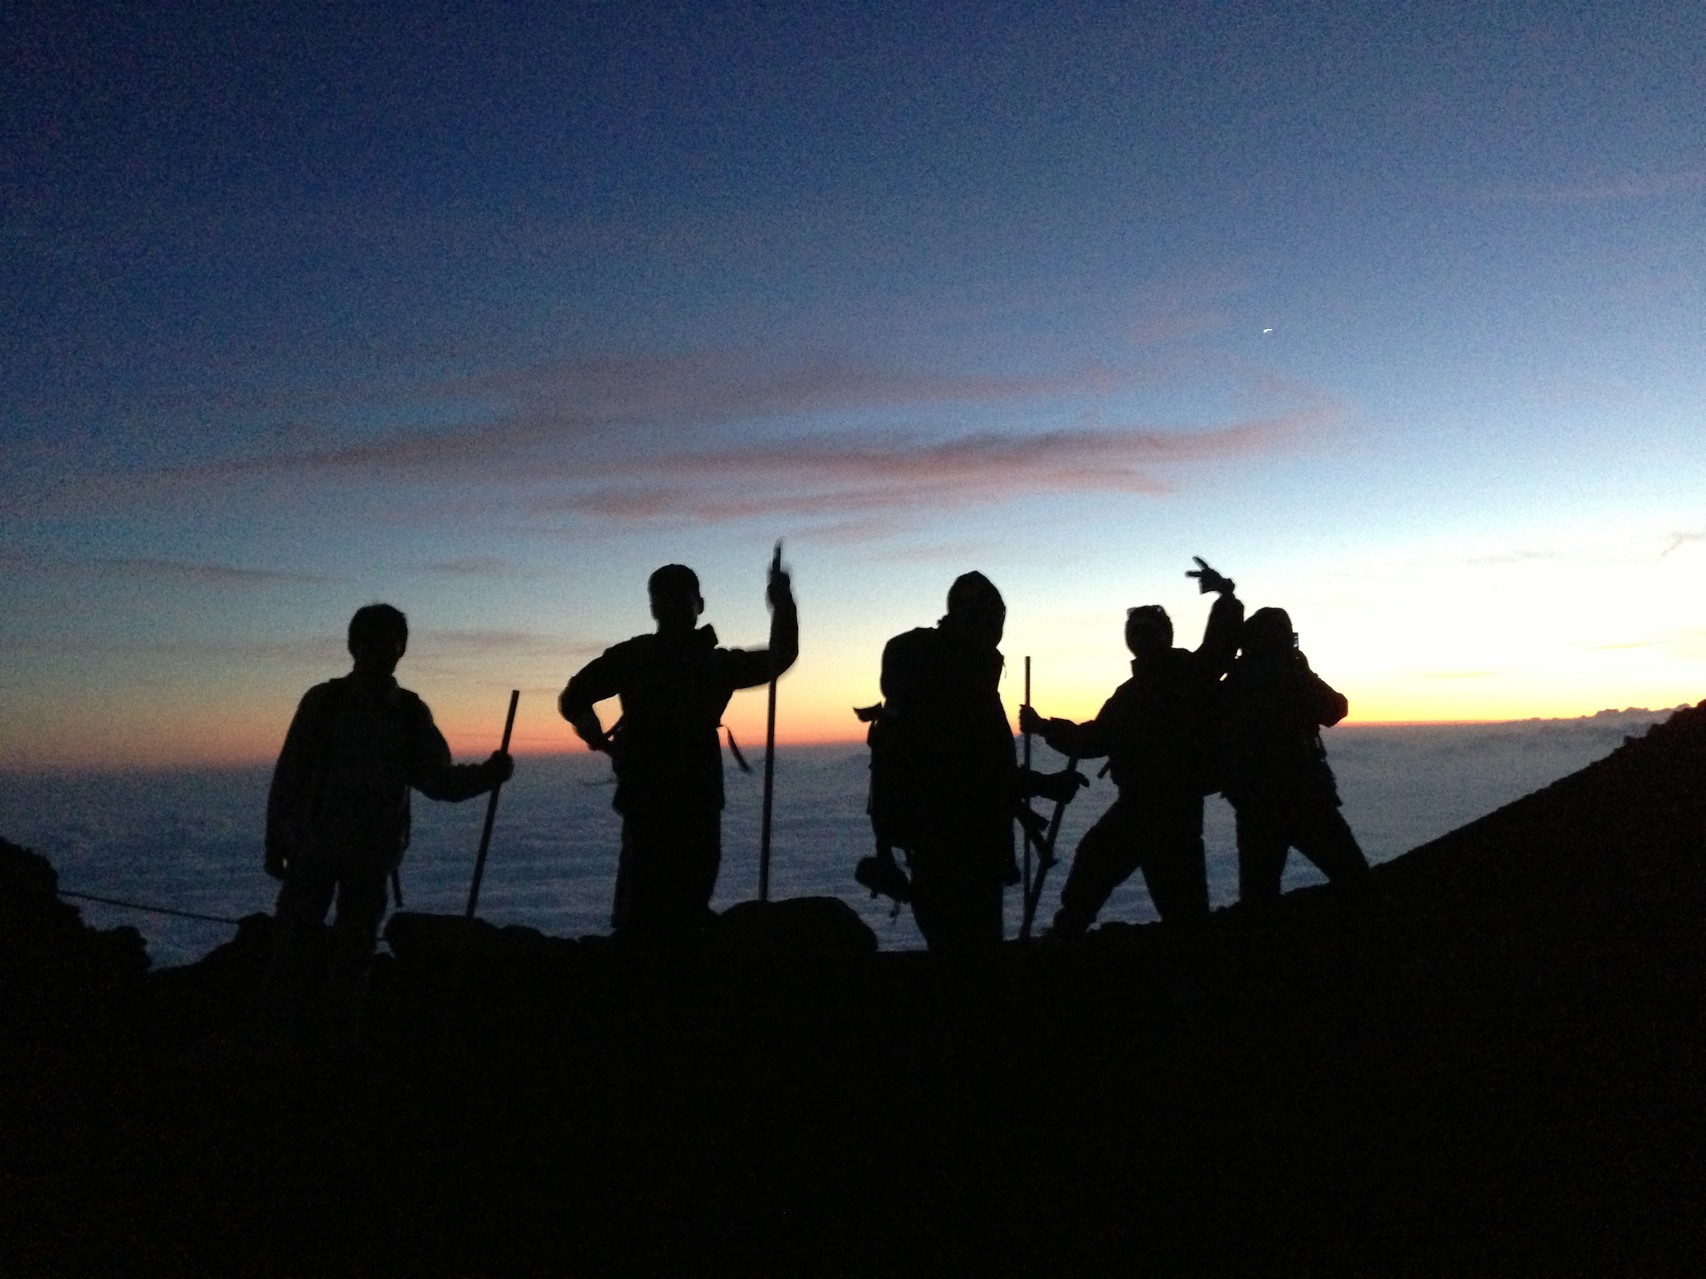 【写真】少年院出身者交流会のひとつである富士登山を行う参加者